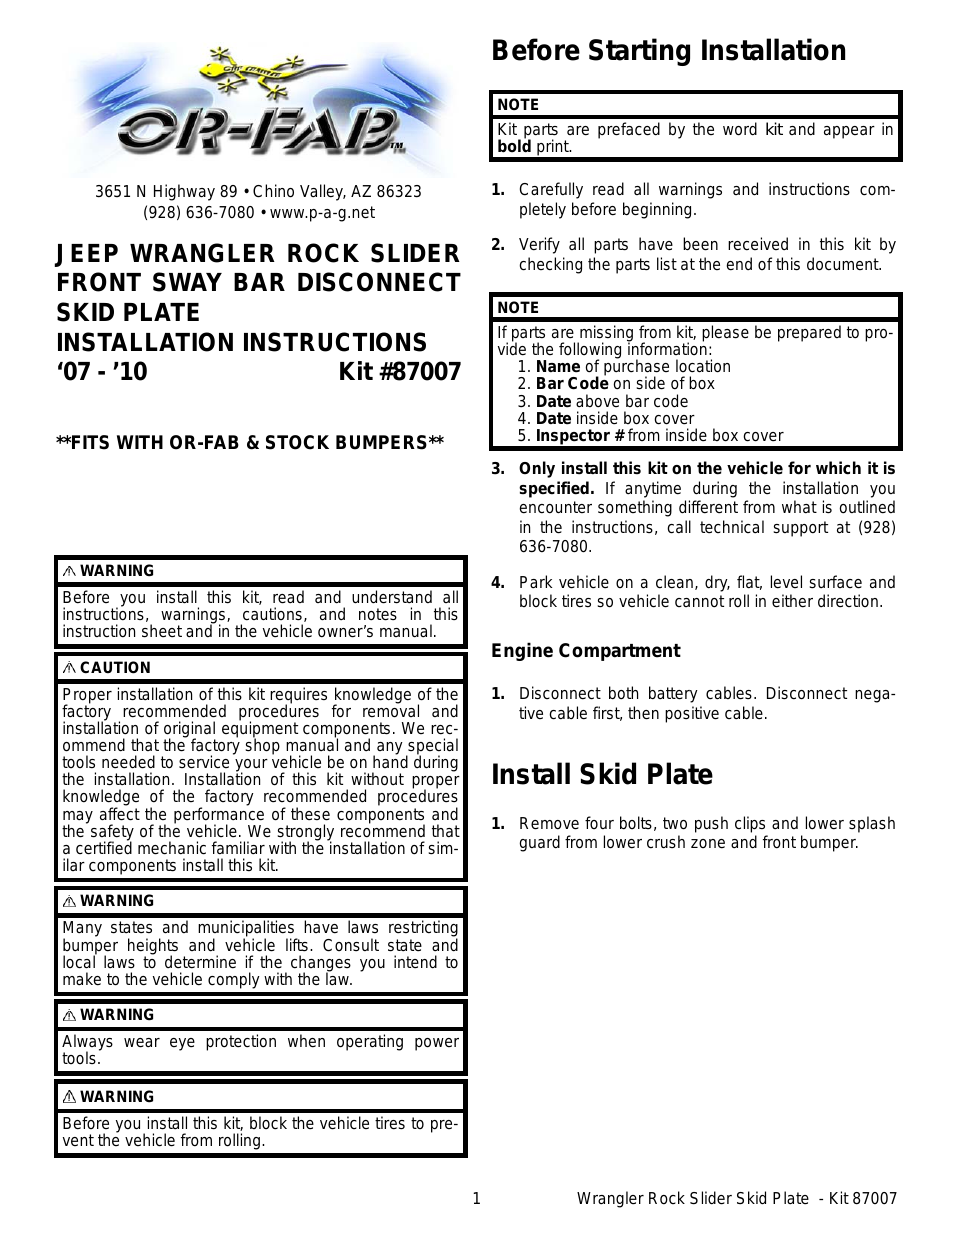 87007 JK ROCK SLIDER FRONT SWAY BAR DISCONNECT SKID PLATE